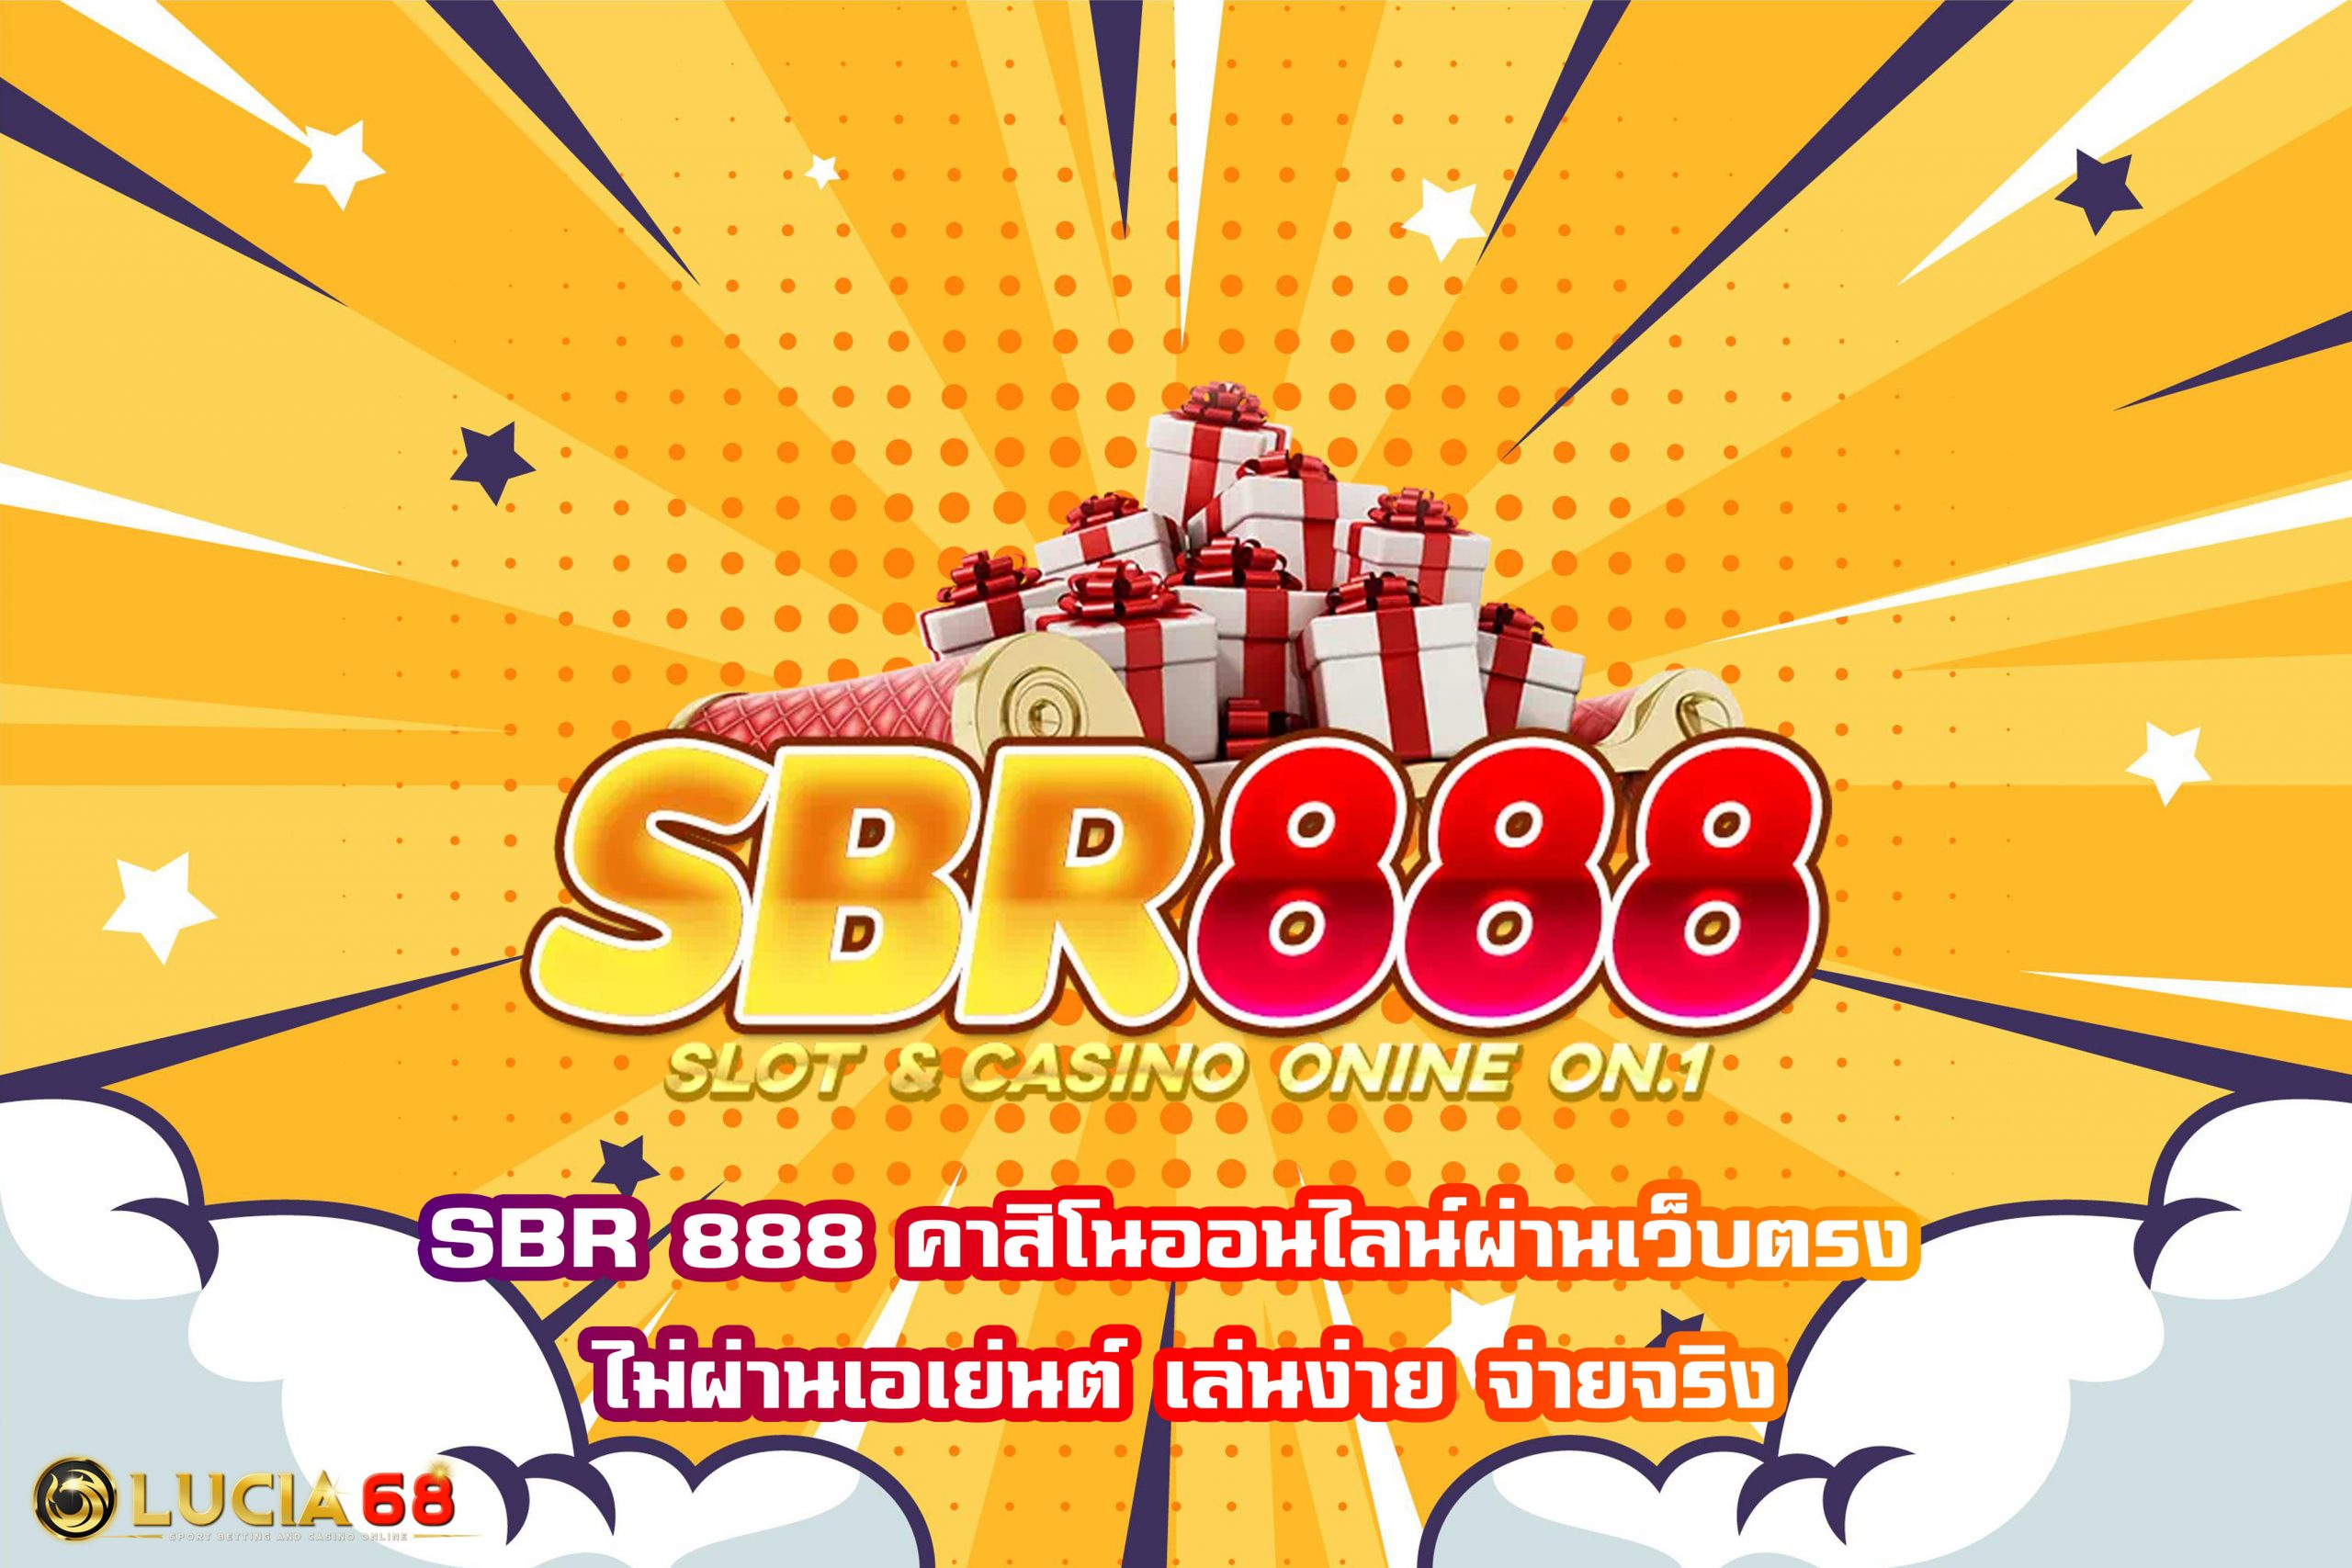 SBR 888 คาสิโนออนไลน์ผ่านเว็บตรง ไม่ผ่านเอเย่นต์ เล่นง่าย จ่ายจริง